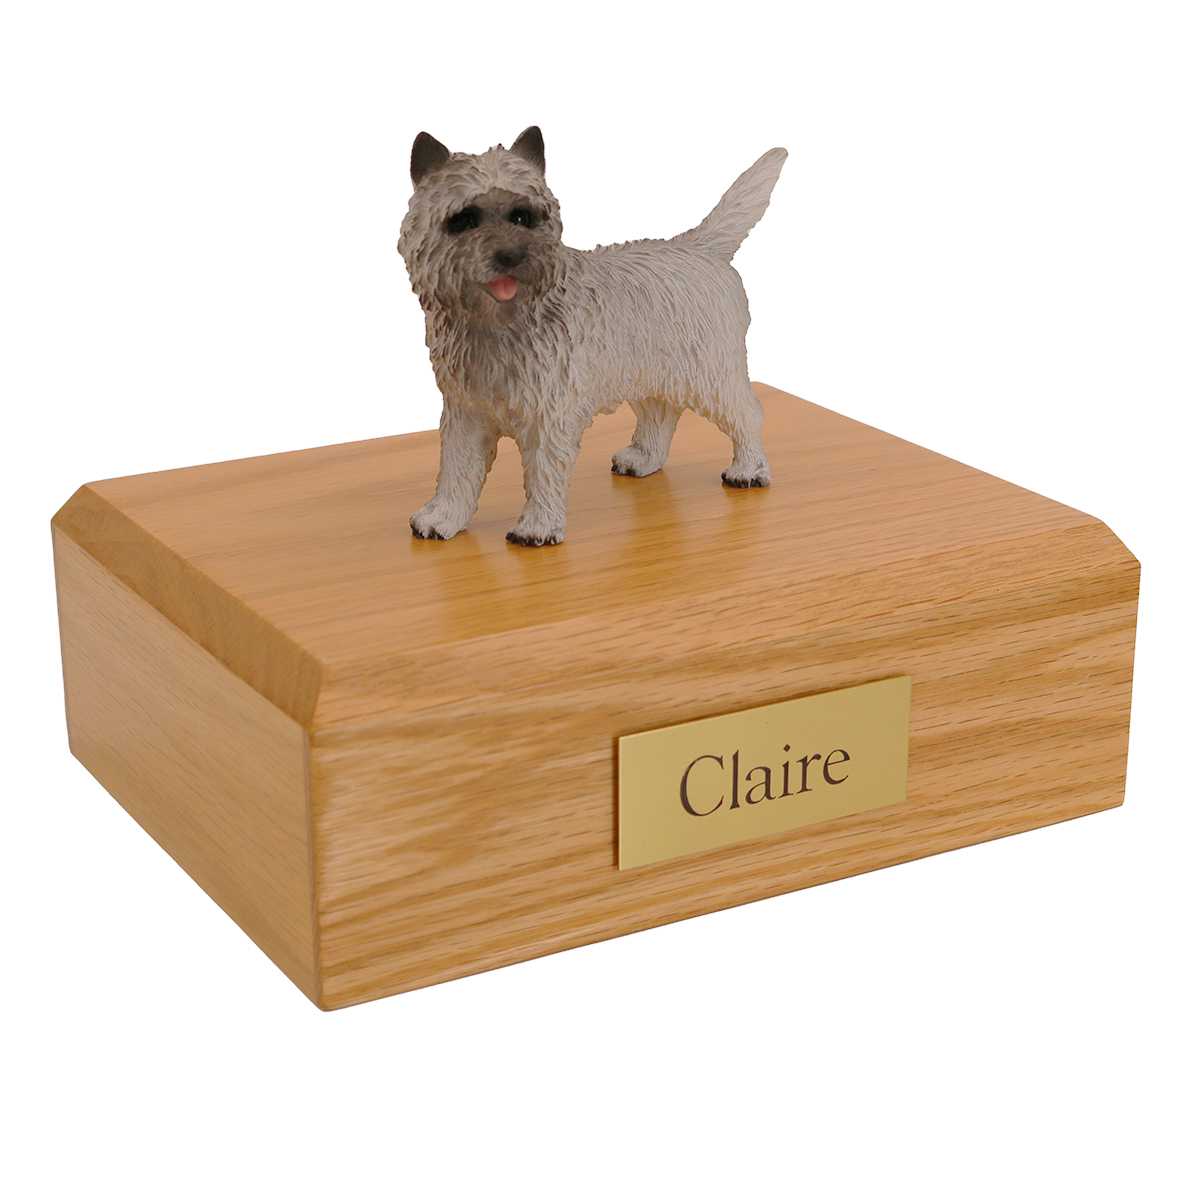 Dog, Cairn Terrier, Gray - Figurine Urn